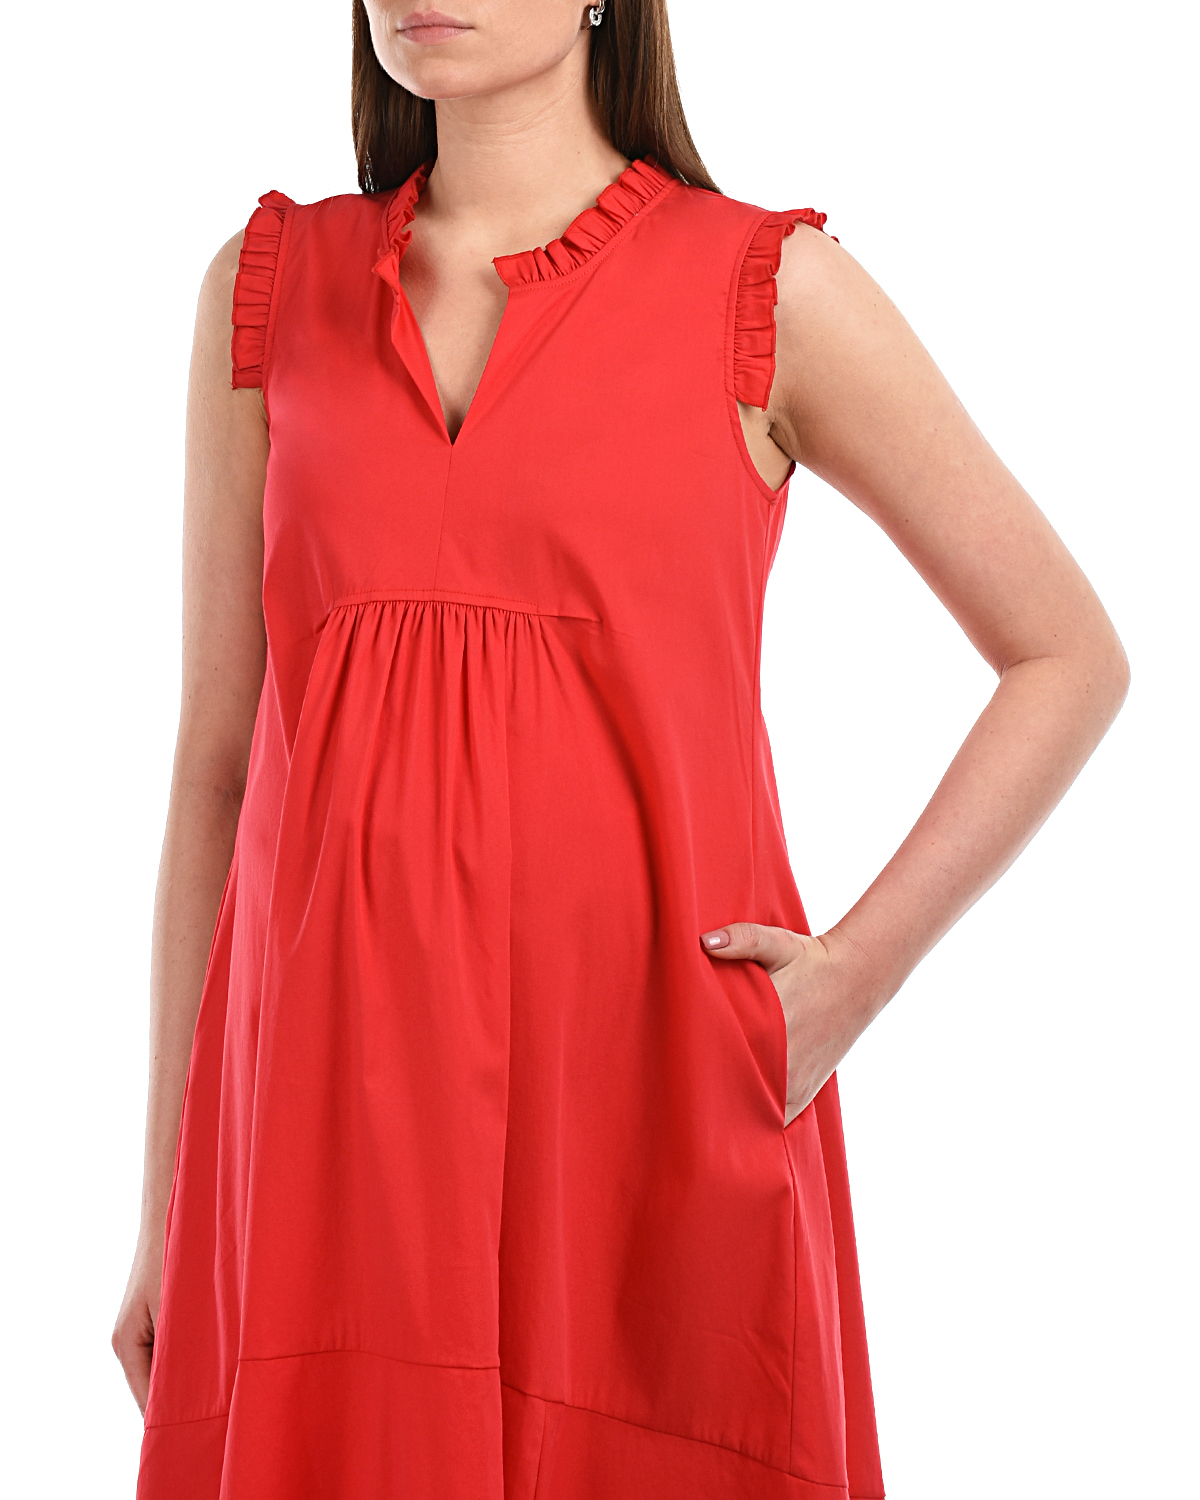 Красное платье с рюшами Attesa, размер 38, цвет красный - фото 7